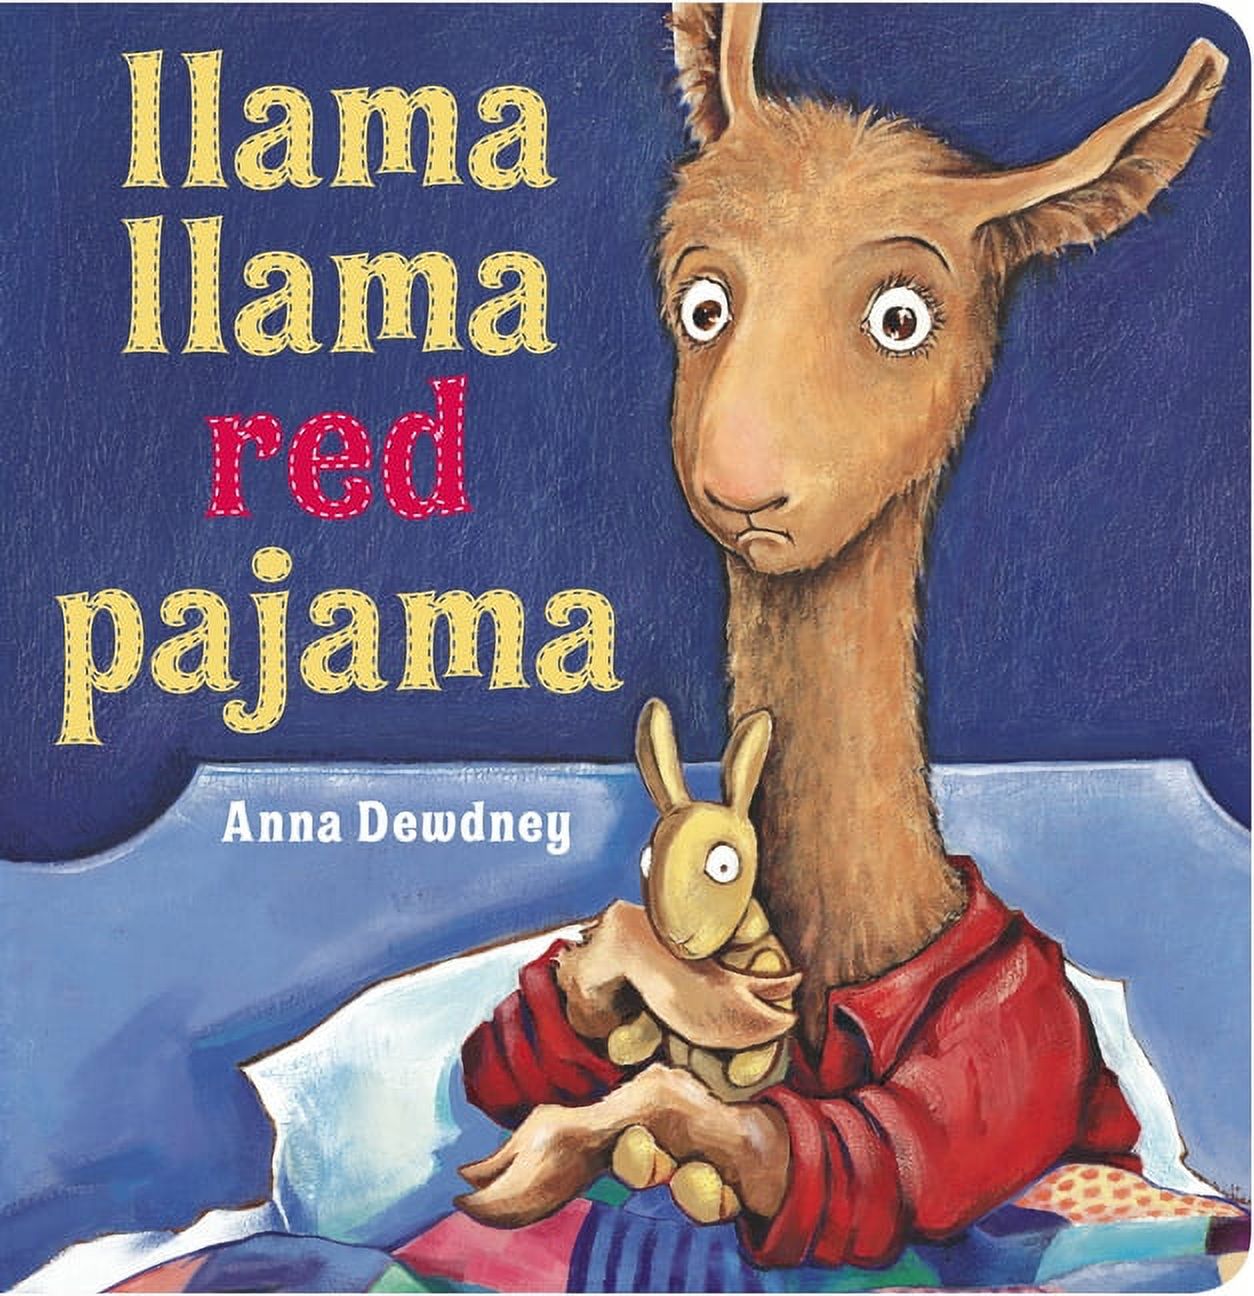 Llama Llama: Llama Llama Red Pajama (Board book) - image 1 of 1